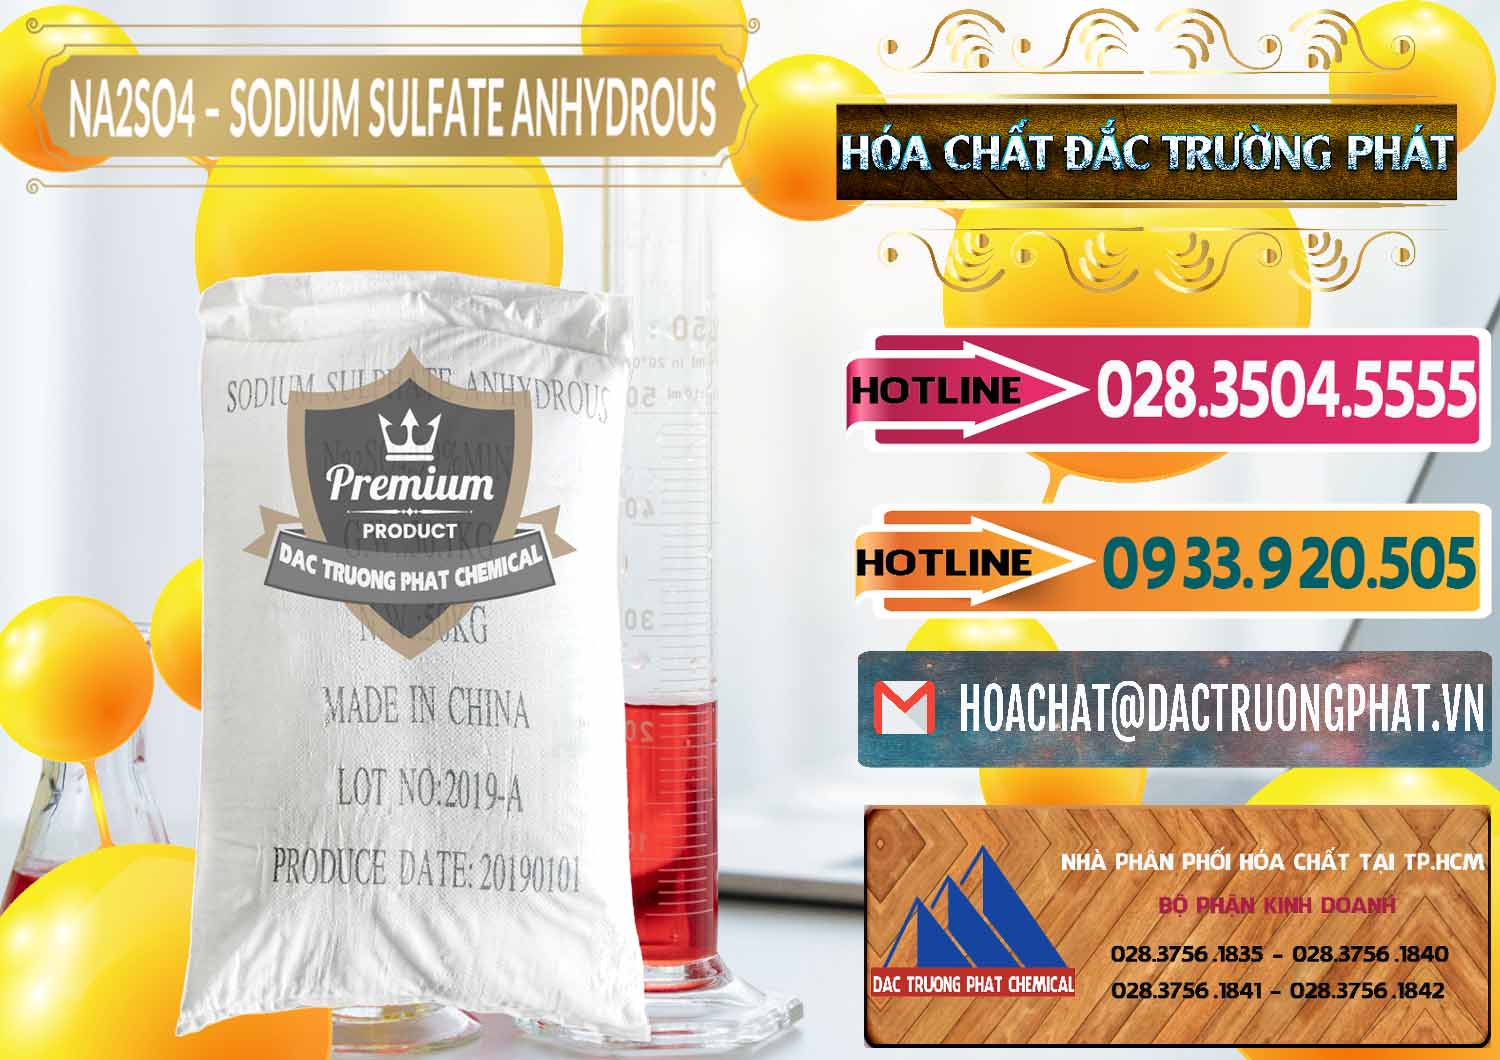 Nơi chuyên bán ( cung ứng ) Sodium Sulphate - Muối Sunfat Na2SO4 PH 6-8 Trung Quốc China - 0099 - Cty chuyên bán ( cung cấp ) hóa chất tại TP.HCM - dactruongphat.vn